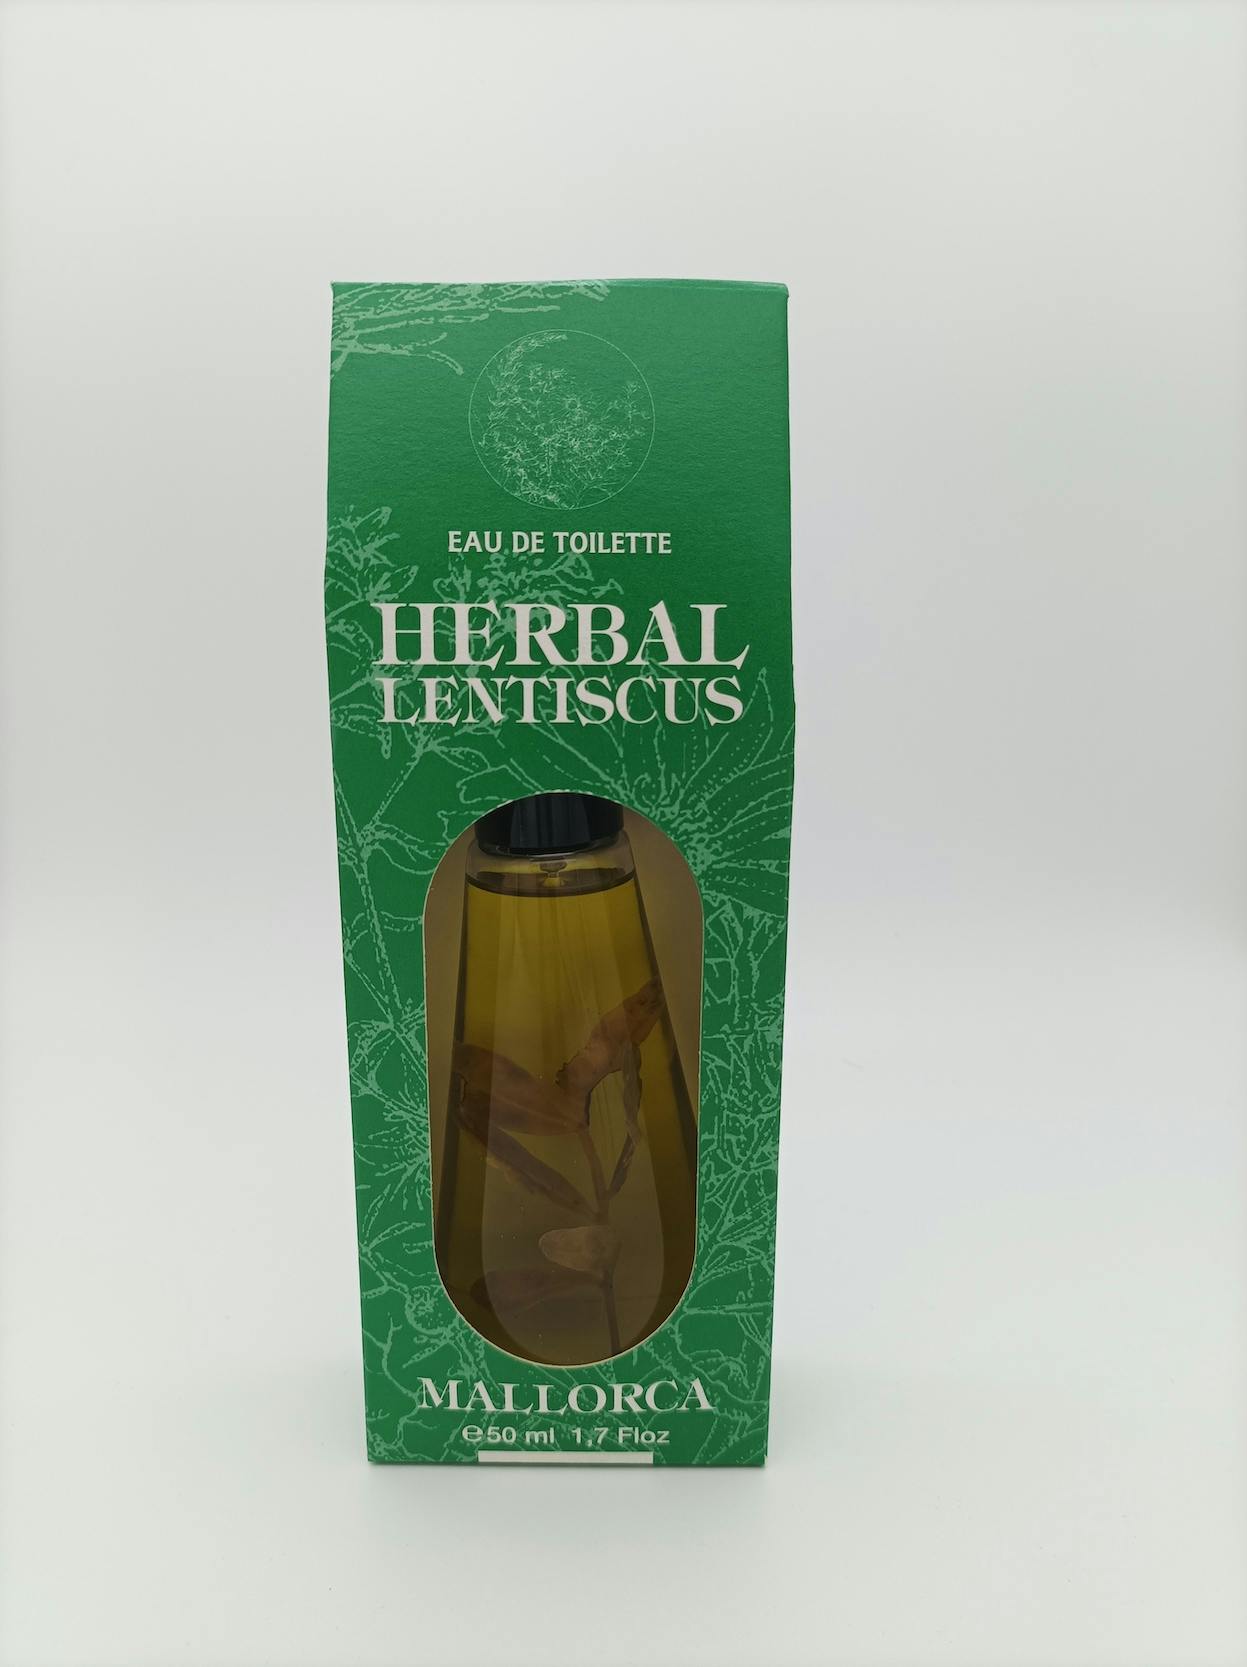 Imagen caja de Herbal eau de toilette